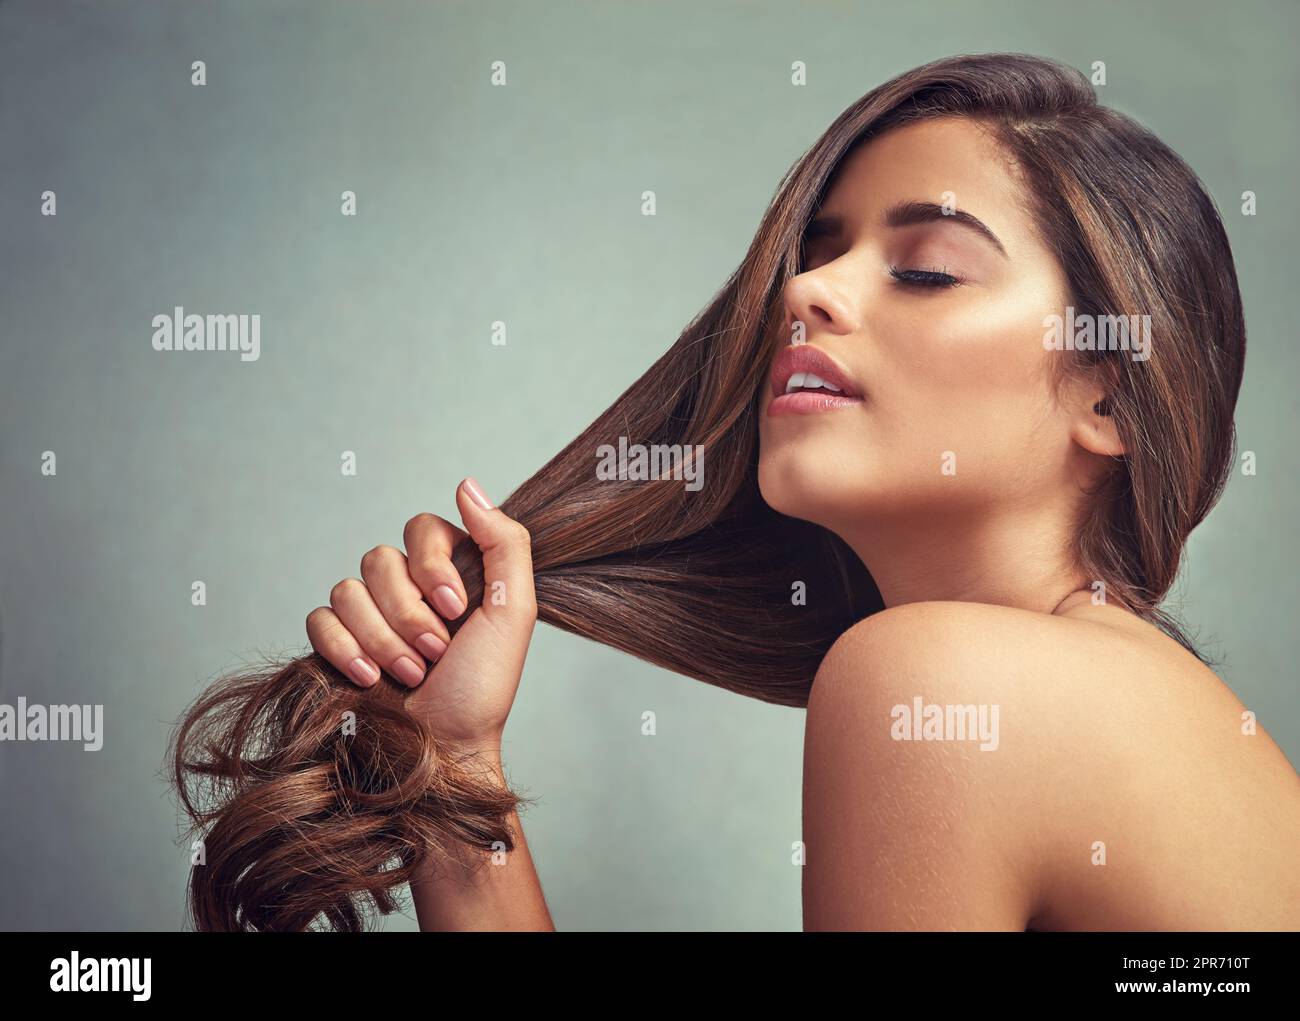 Liebe dich selbst, liebe dein Haar. Studioaufnahme einer schönen Frau mit langen Schlössern, die vor einem grauen Hintergrund posiert. Stockfoto